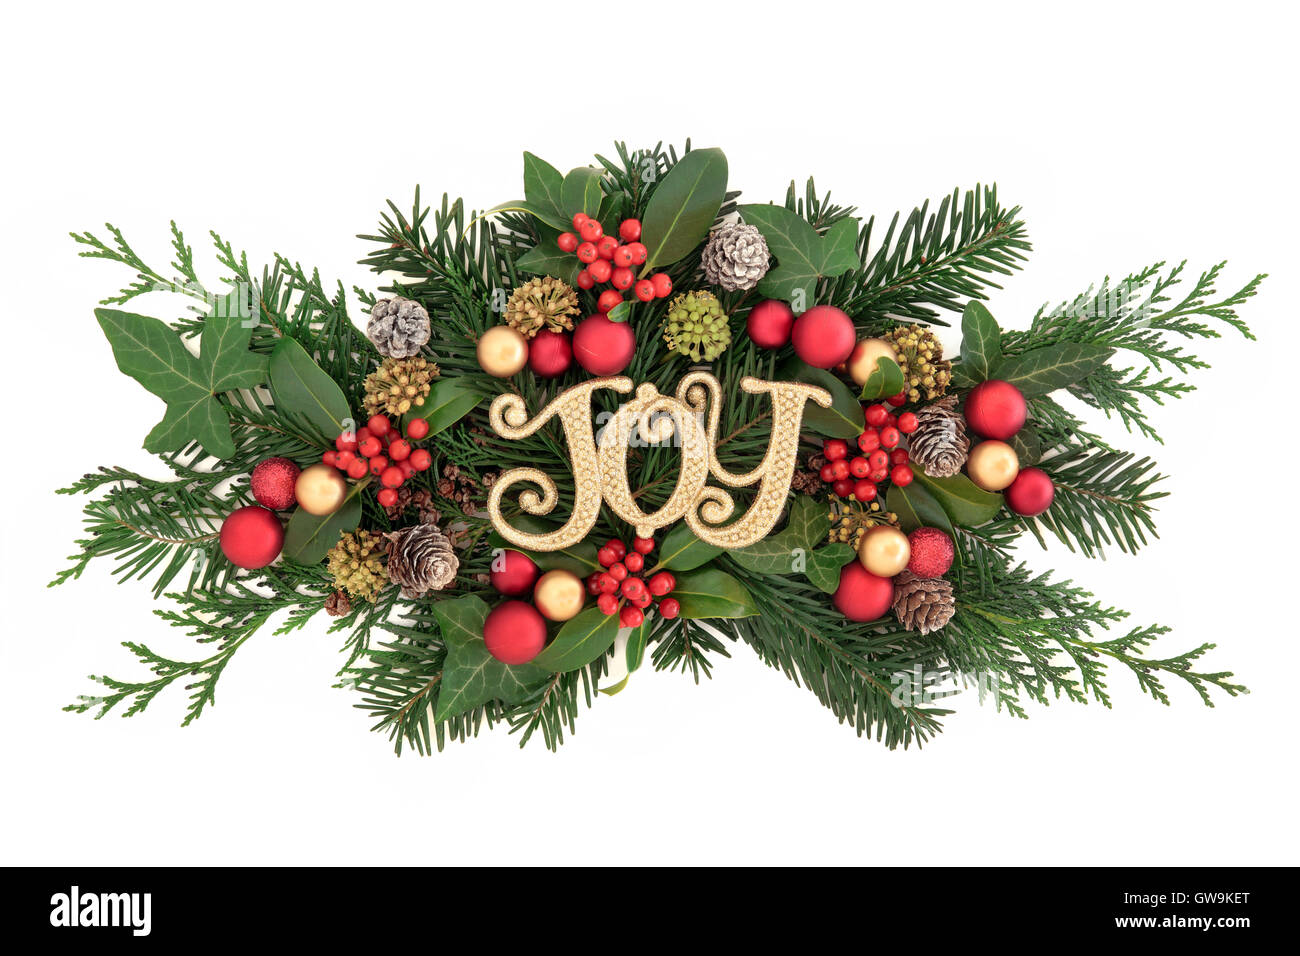 Weihnachts-Dekoration mit Goldglitter Freude Zeichen, Christbaumkugel Dekorationen, Holly, Efeu, Schnee bedeckte Tannenzapfen, Zeder, Zypresse und Tanne Stockfoto